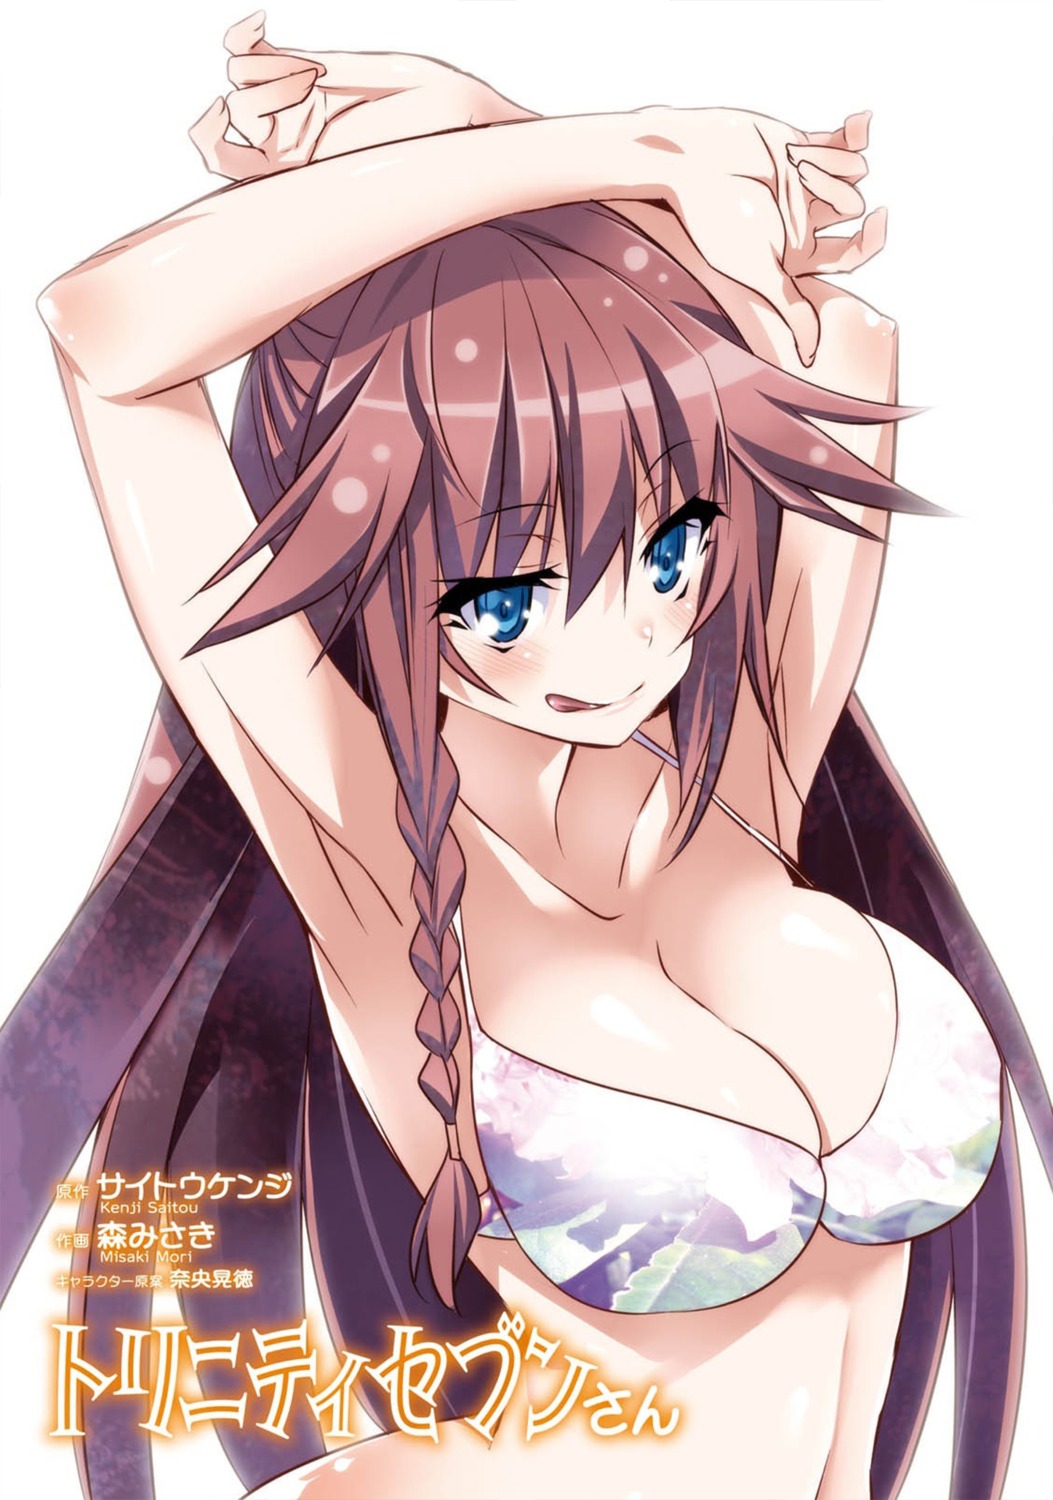 asami_lilith bikini_top cleavage nao_akinari trinity_seven